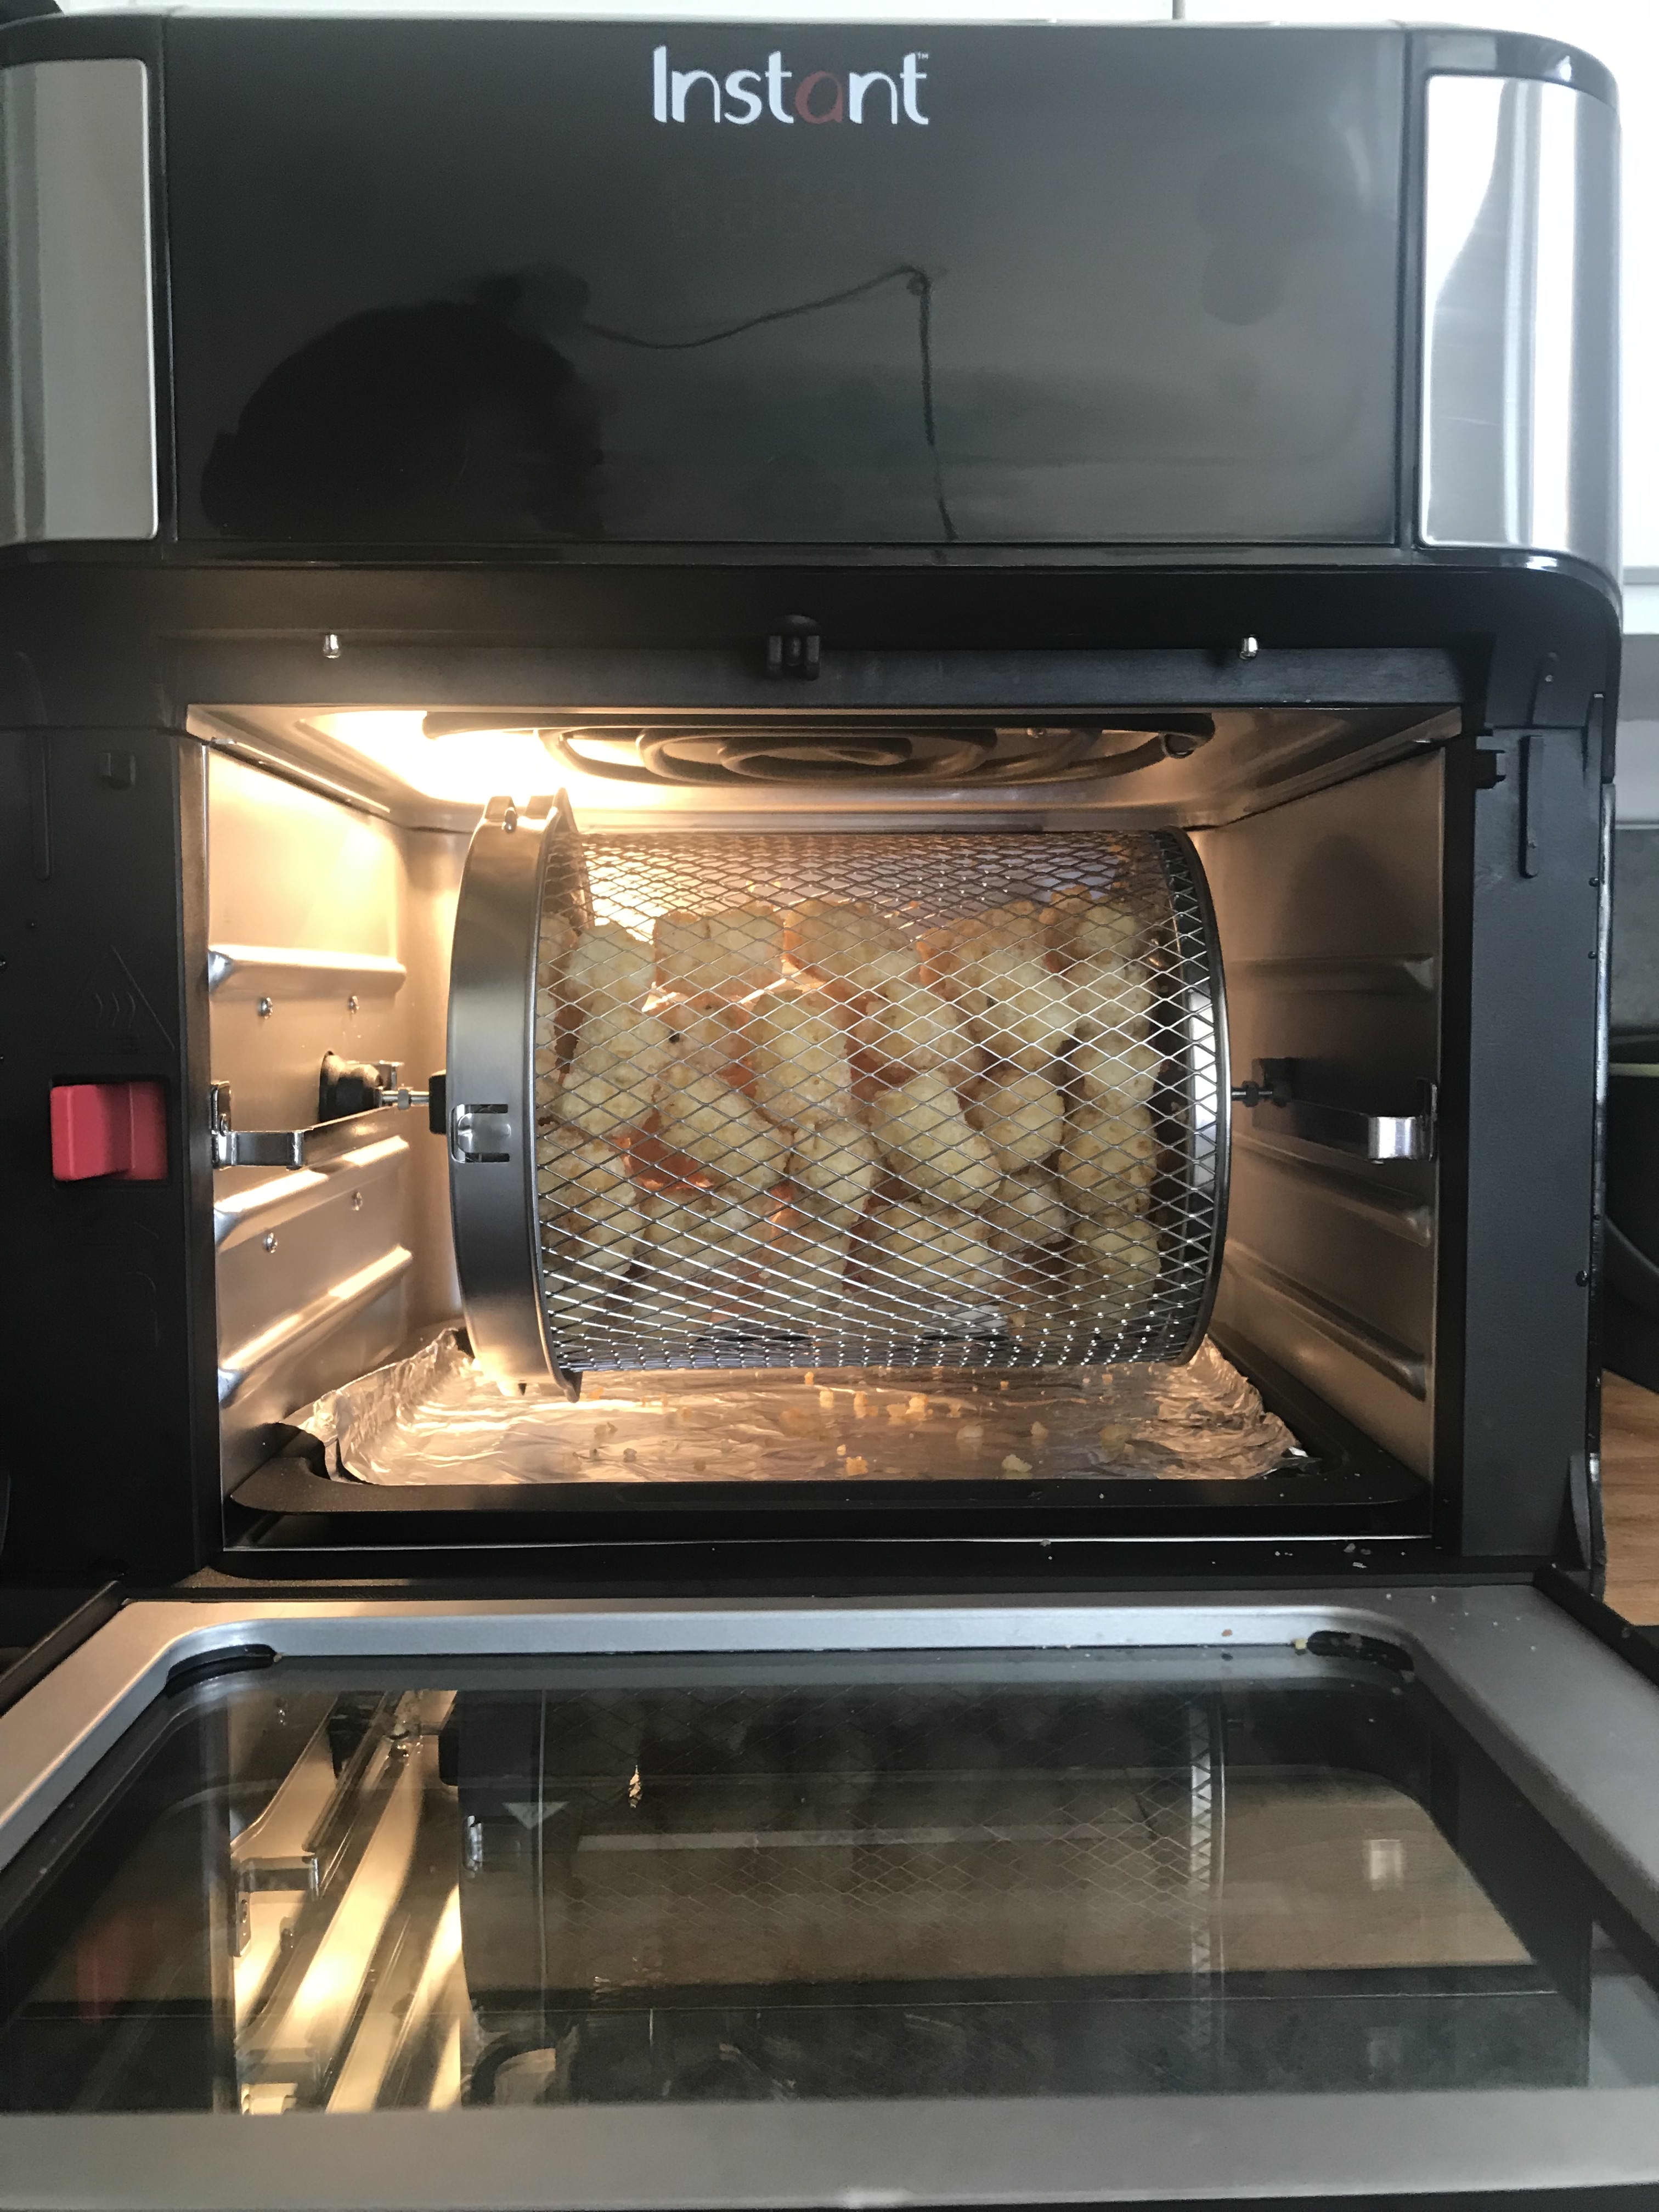 Vortex Plus Air Fryer Oven 10 qt. by Instnat Pot REVIEW